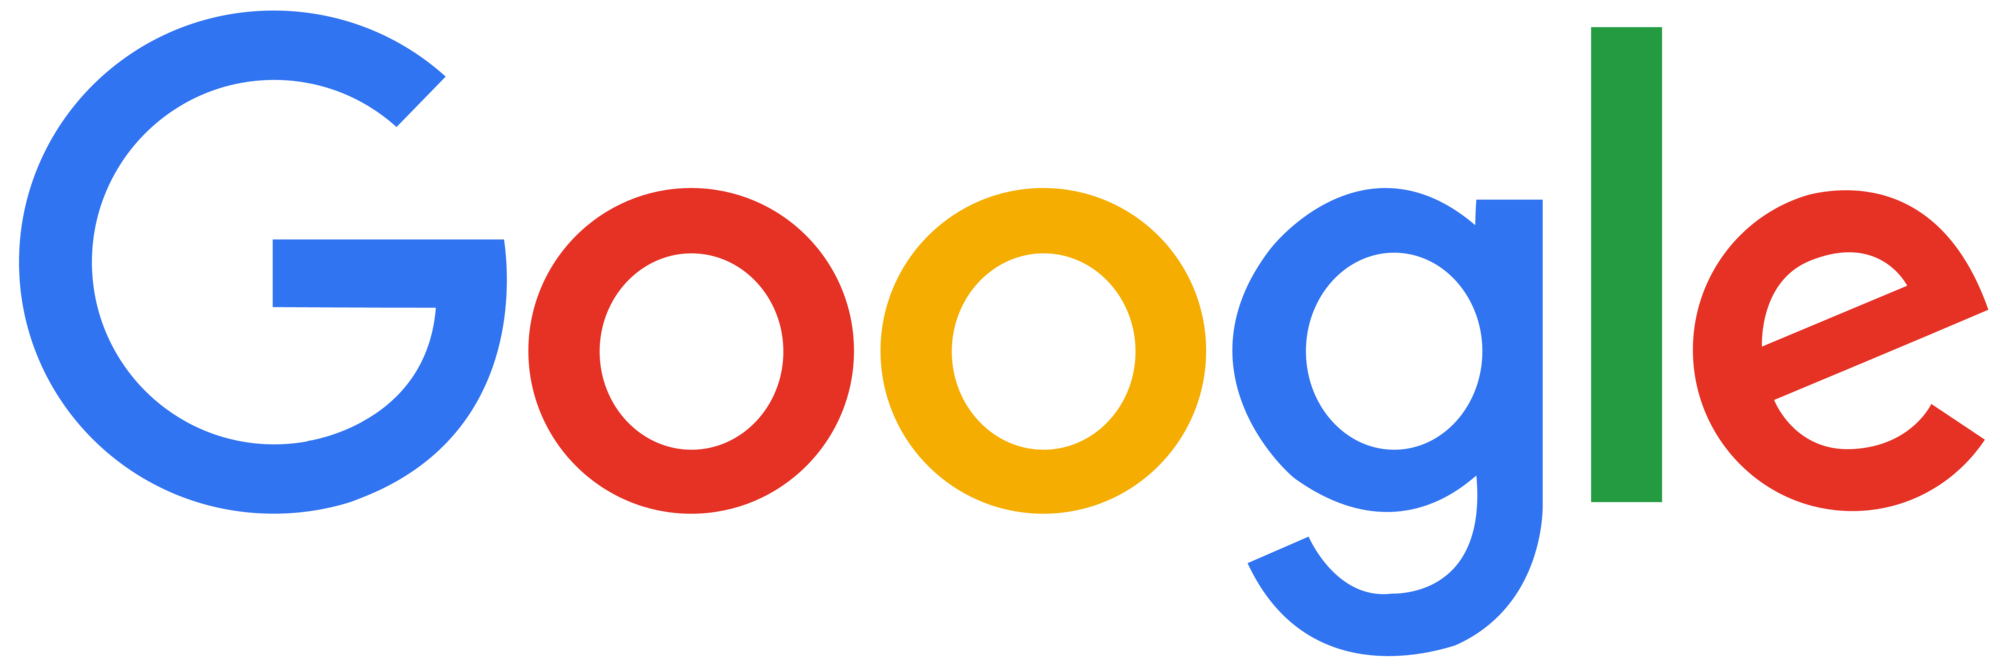 Google | Smurfs Wiki | FANDOM powered by Wikia - Current Google Logo